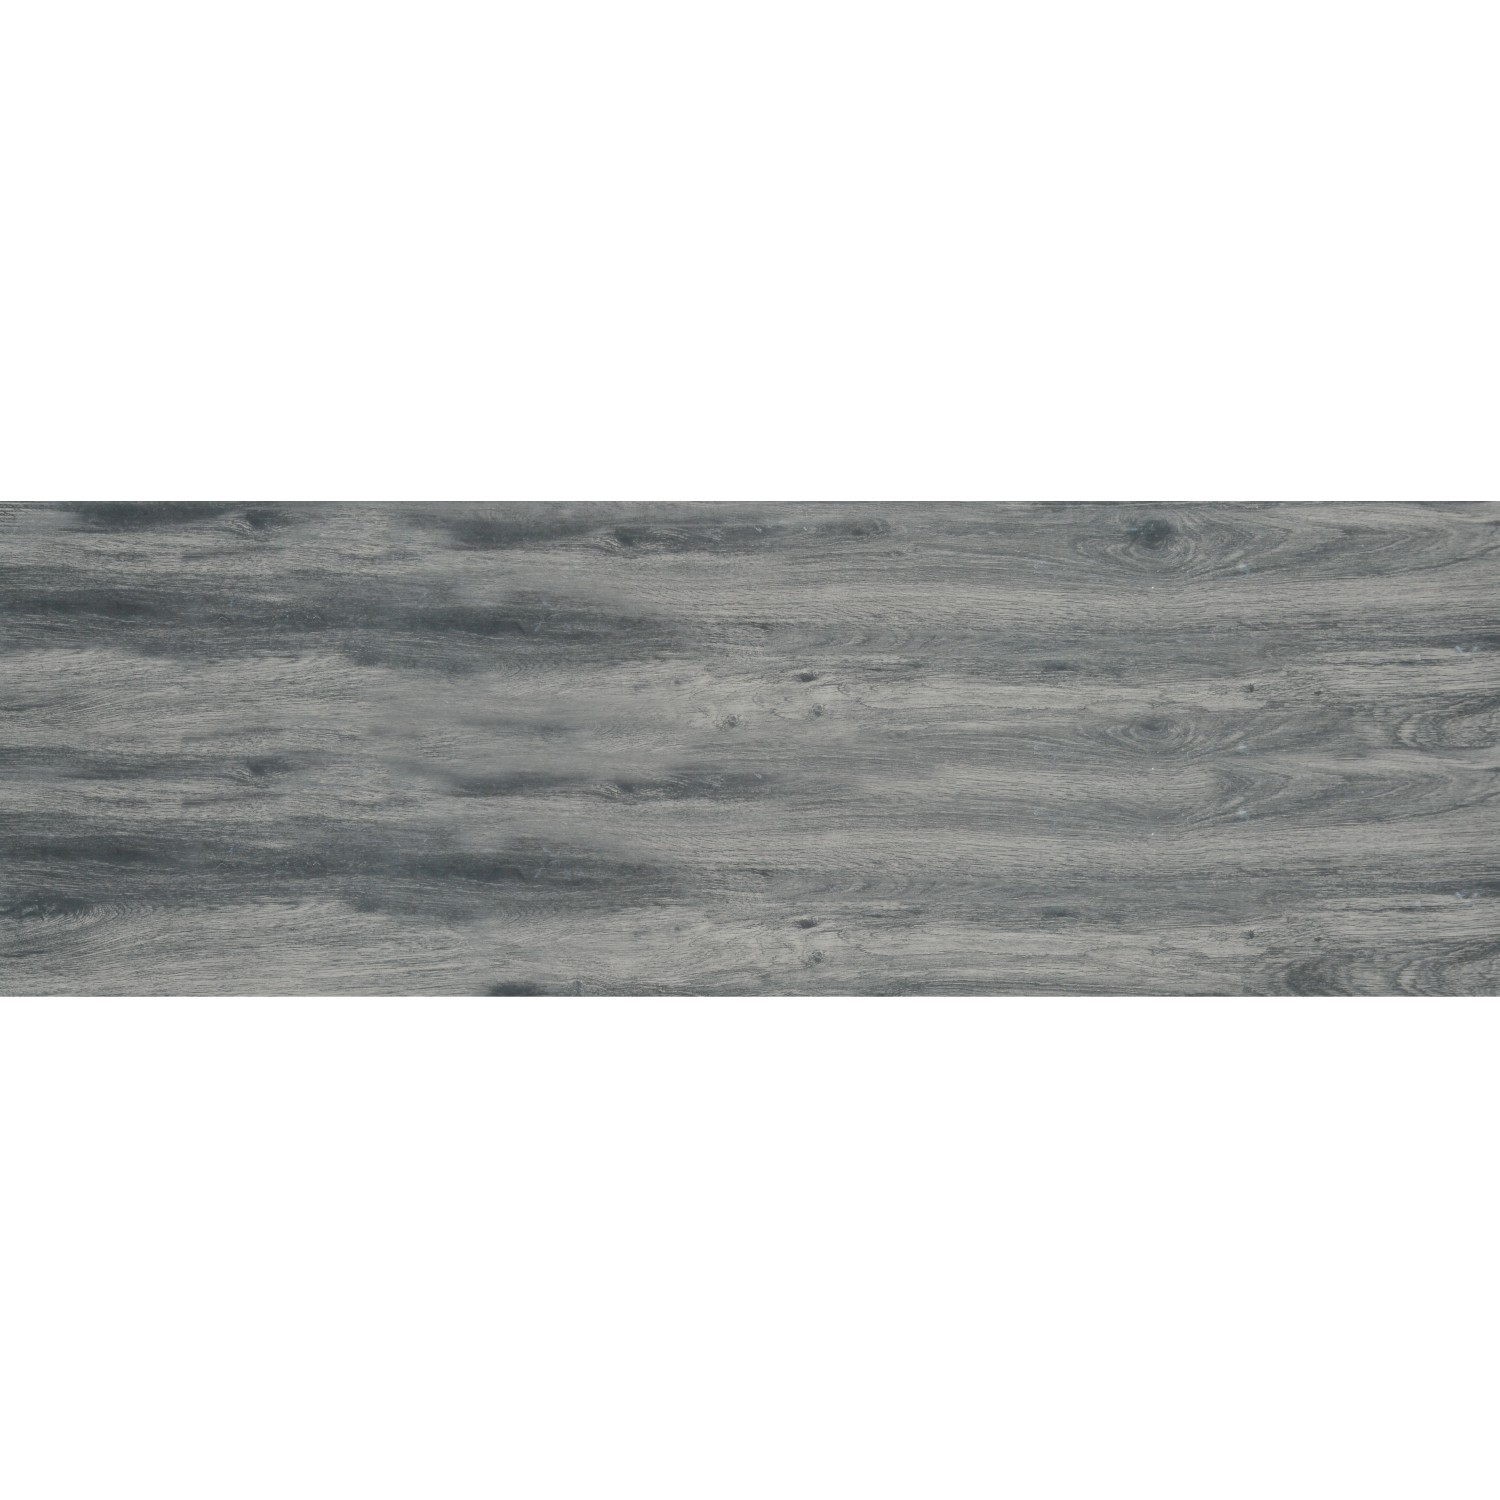 Terrassenplatte Feinsteinzeug Skagen Walnuss-Grau glasiert matt 40x120x2cm 2 St. von -